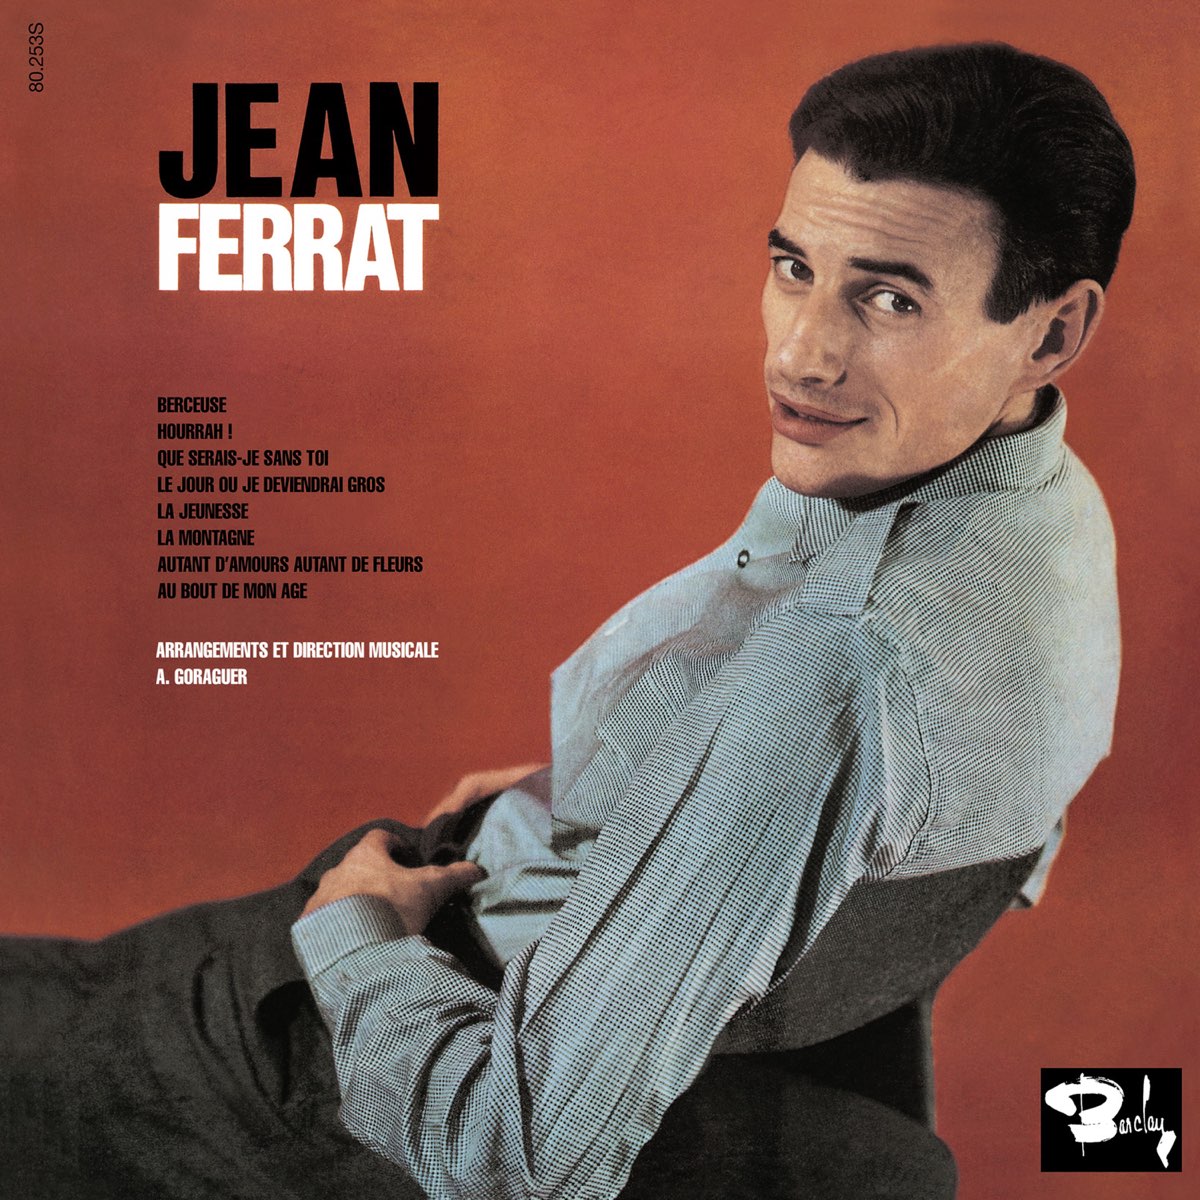 La montagne by Jean Ferrat on Apple Music